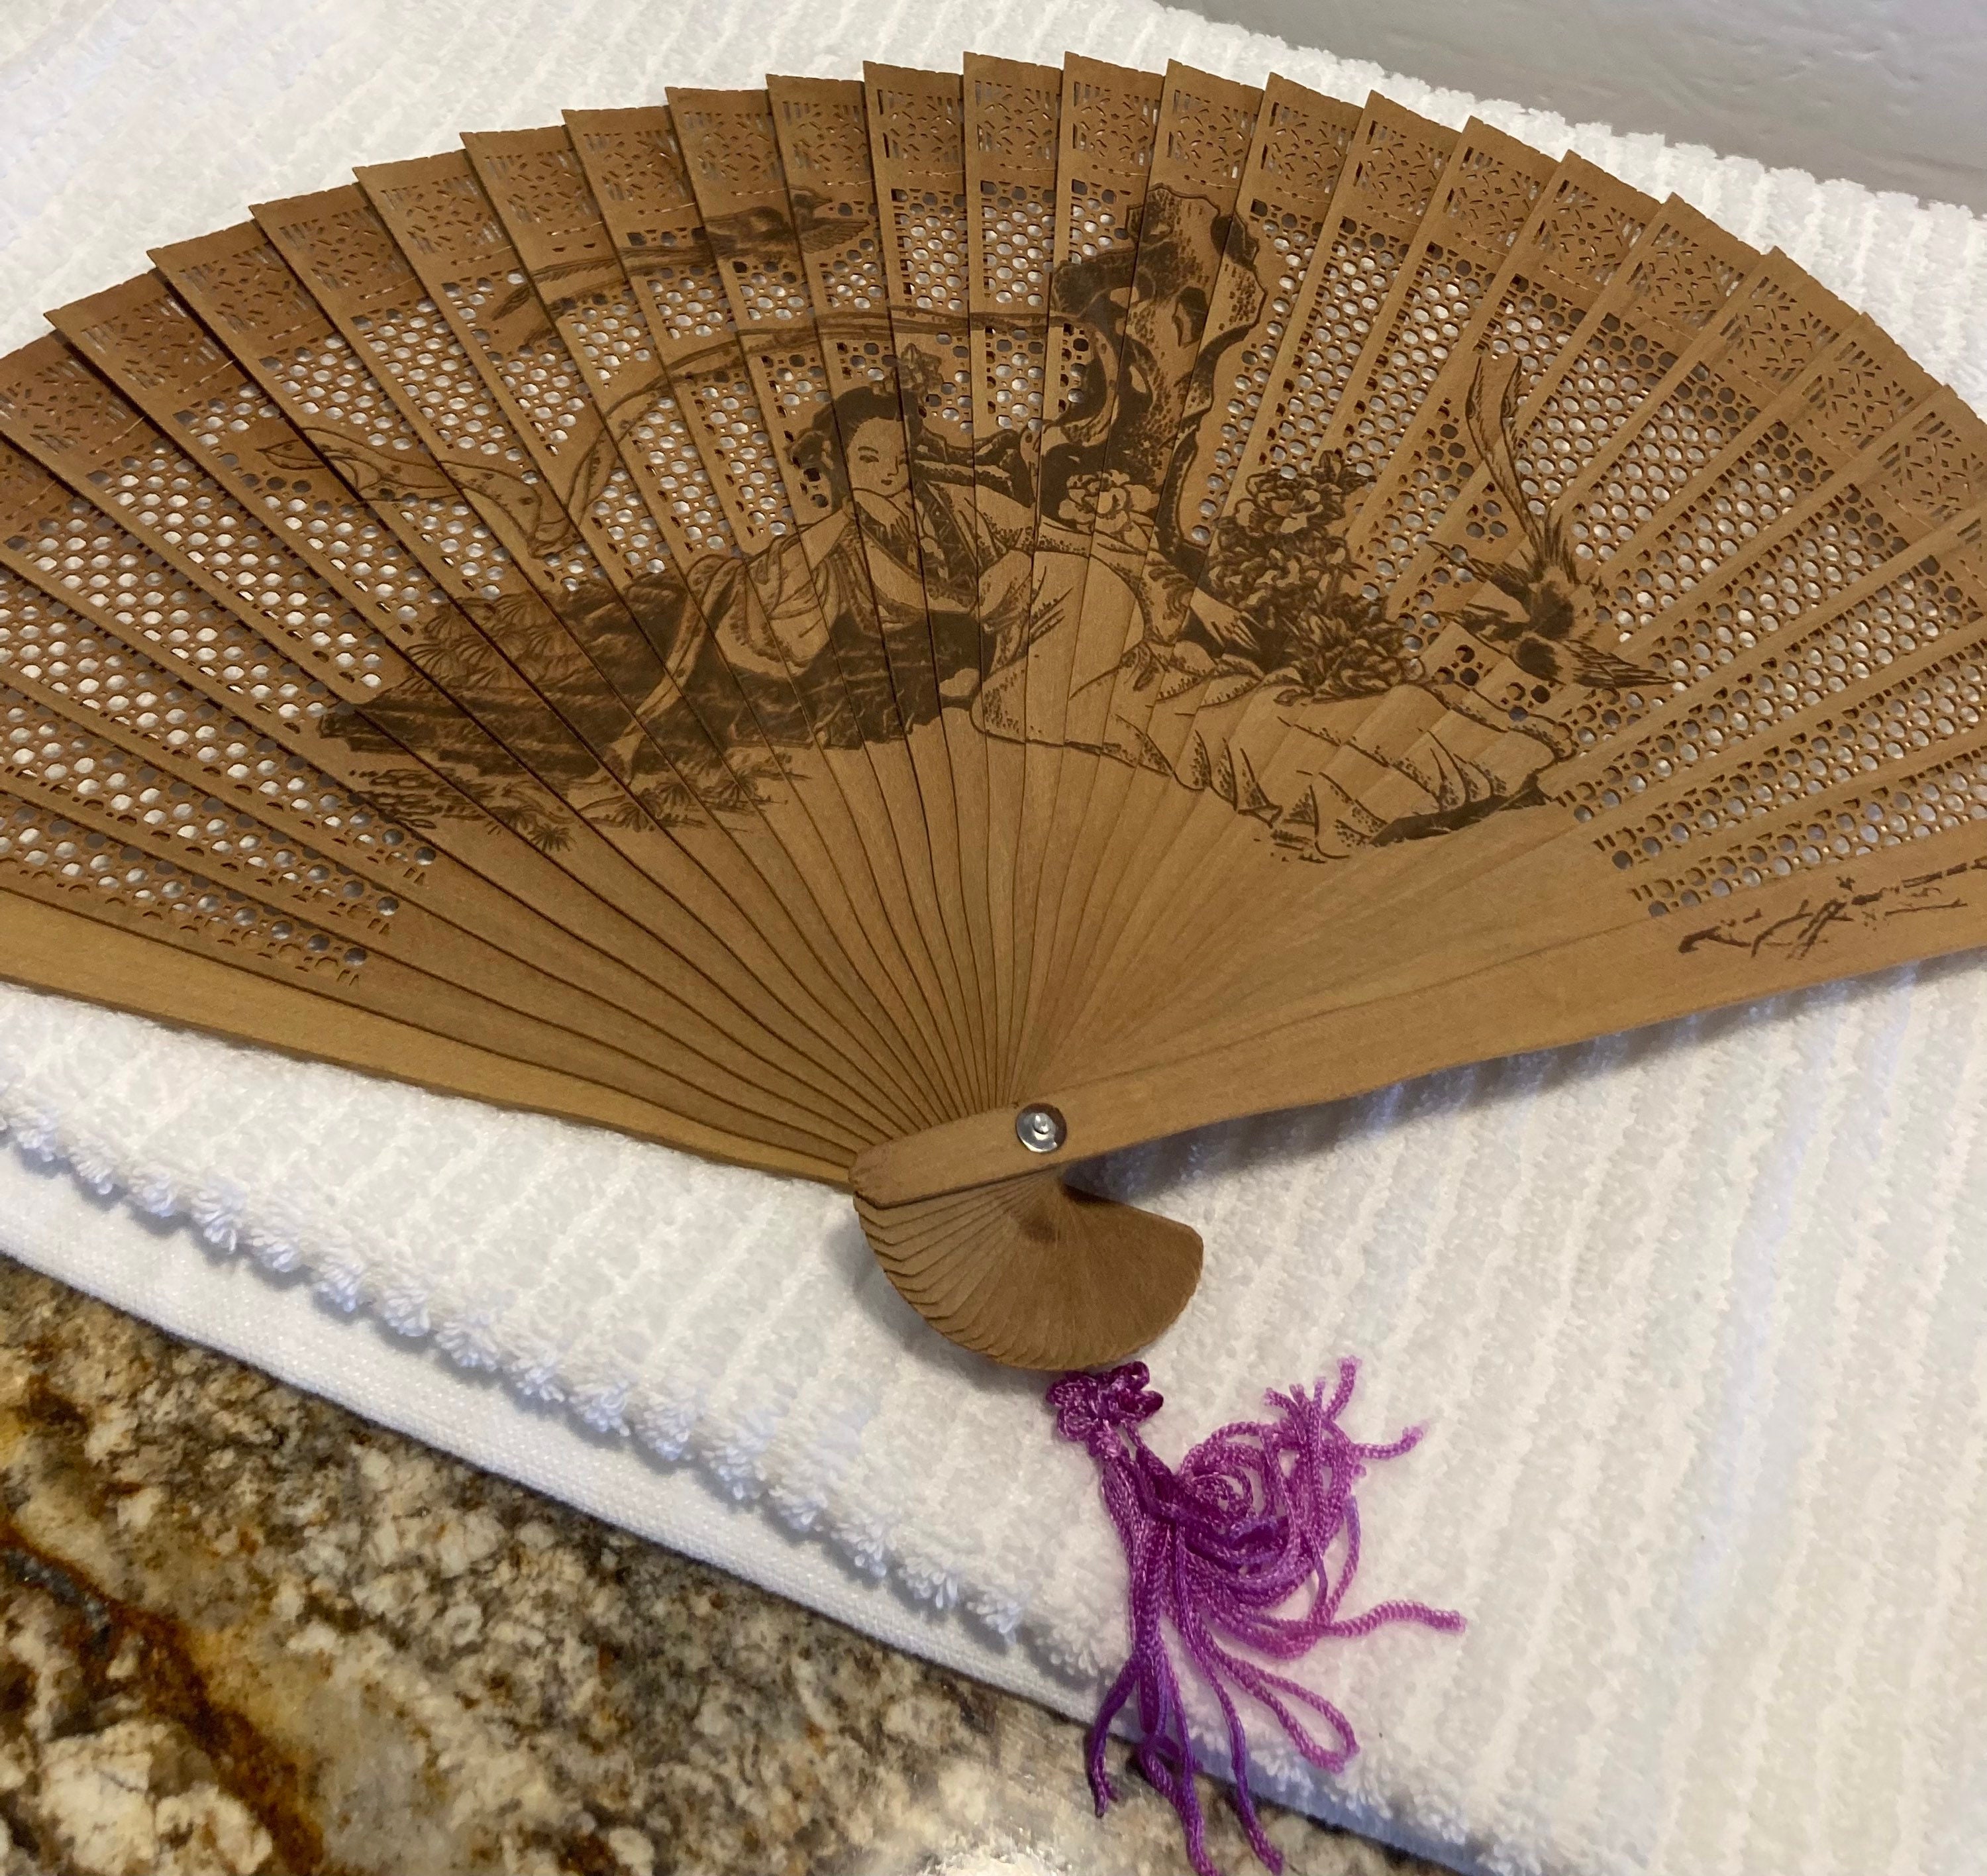 Chinese Folding Hand Fan Wood 